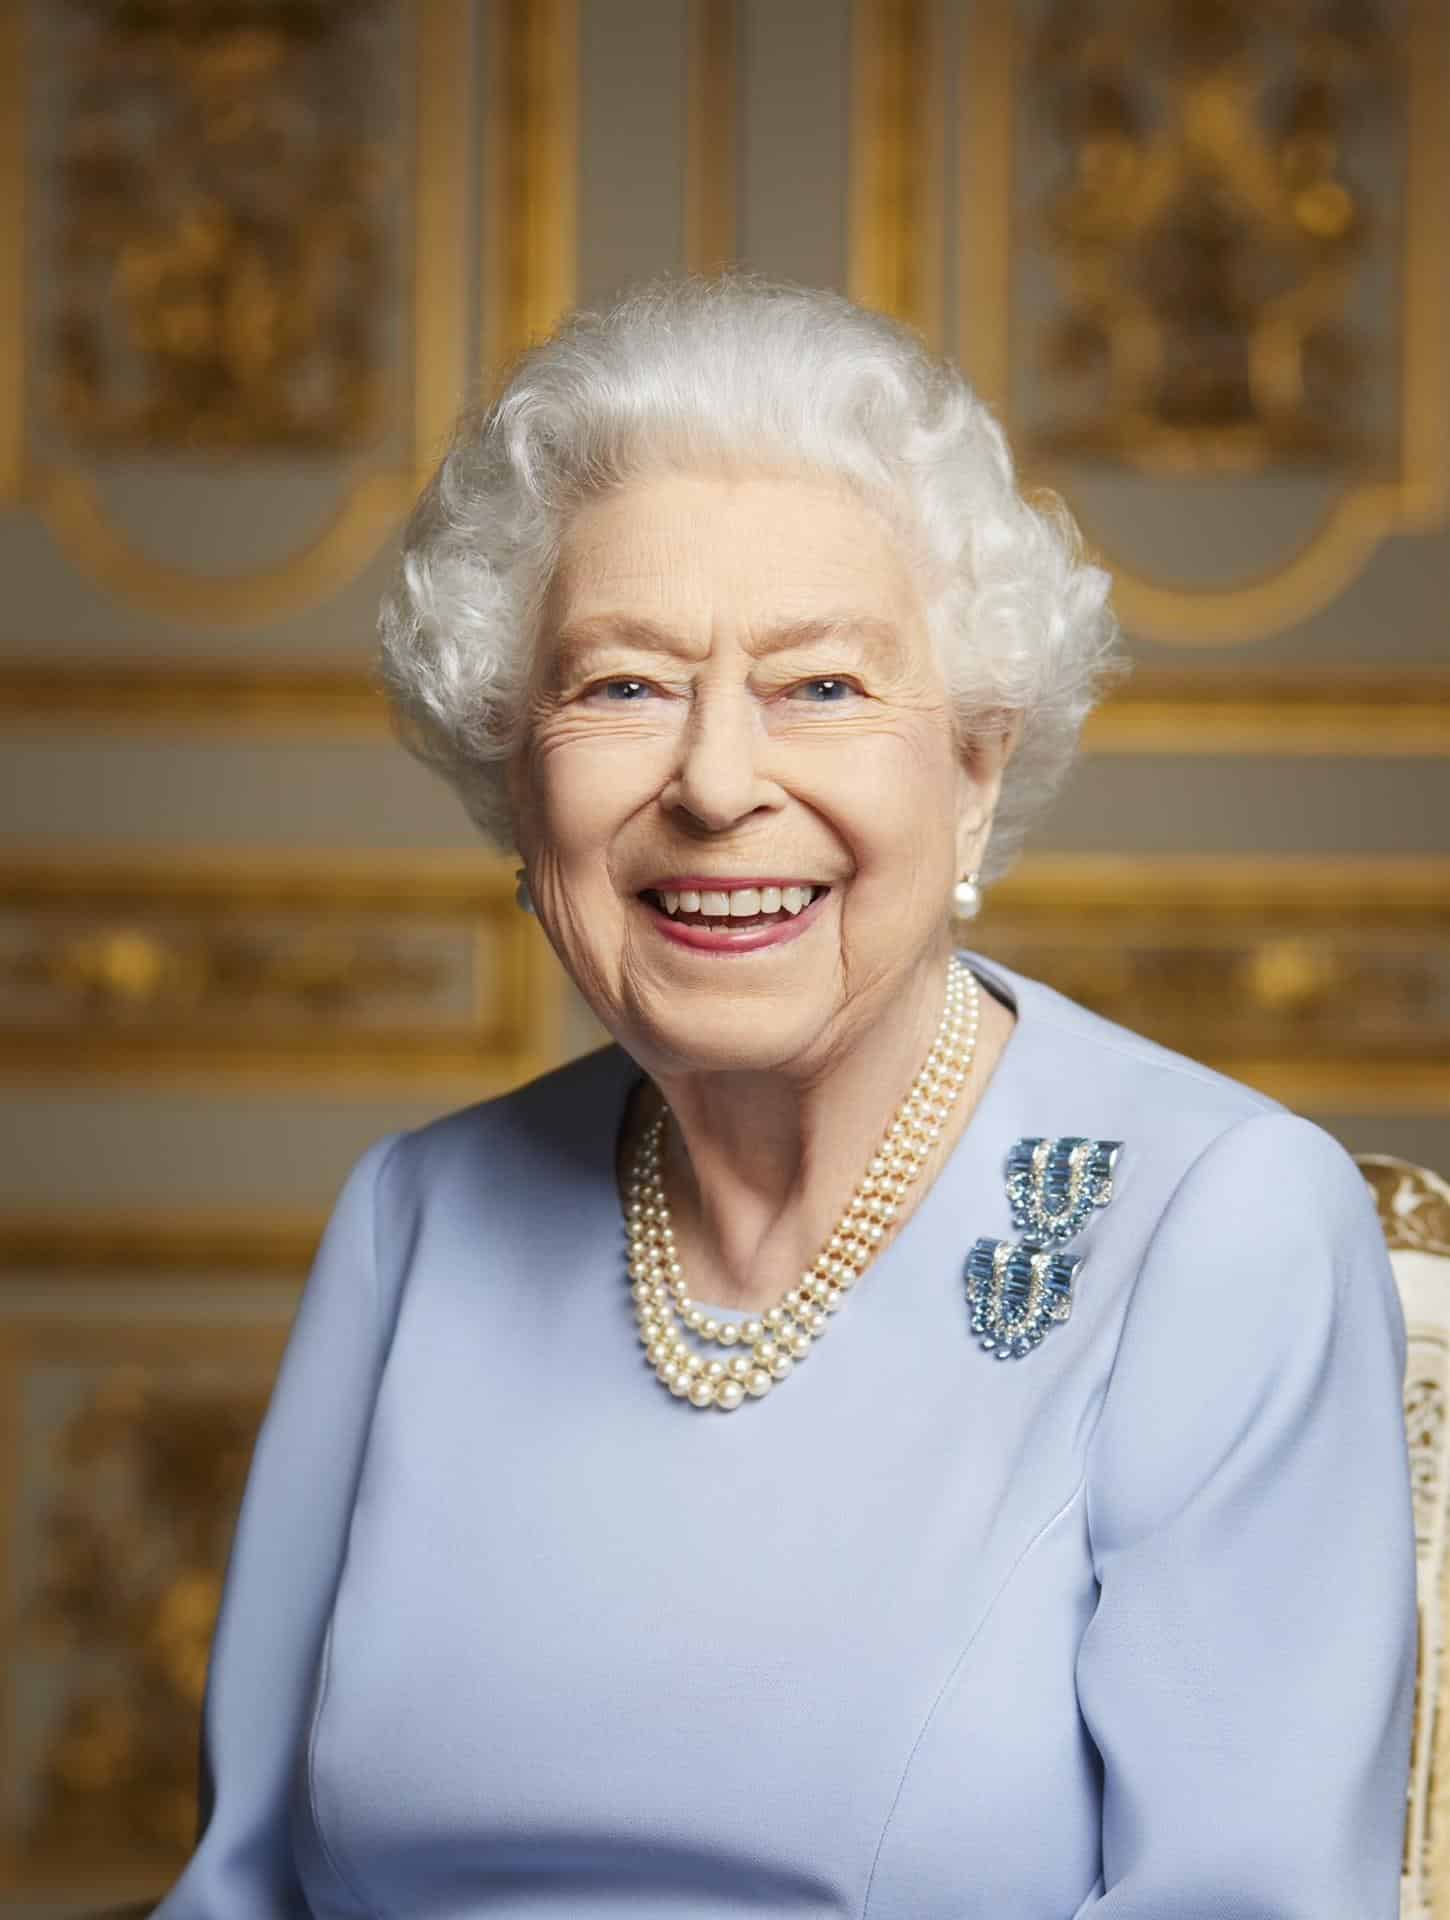 Foto inédita de la reina Isabel II